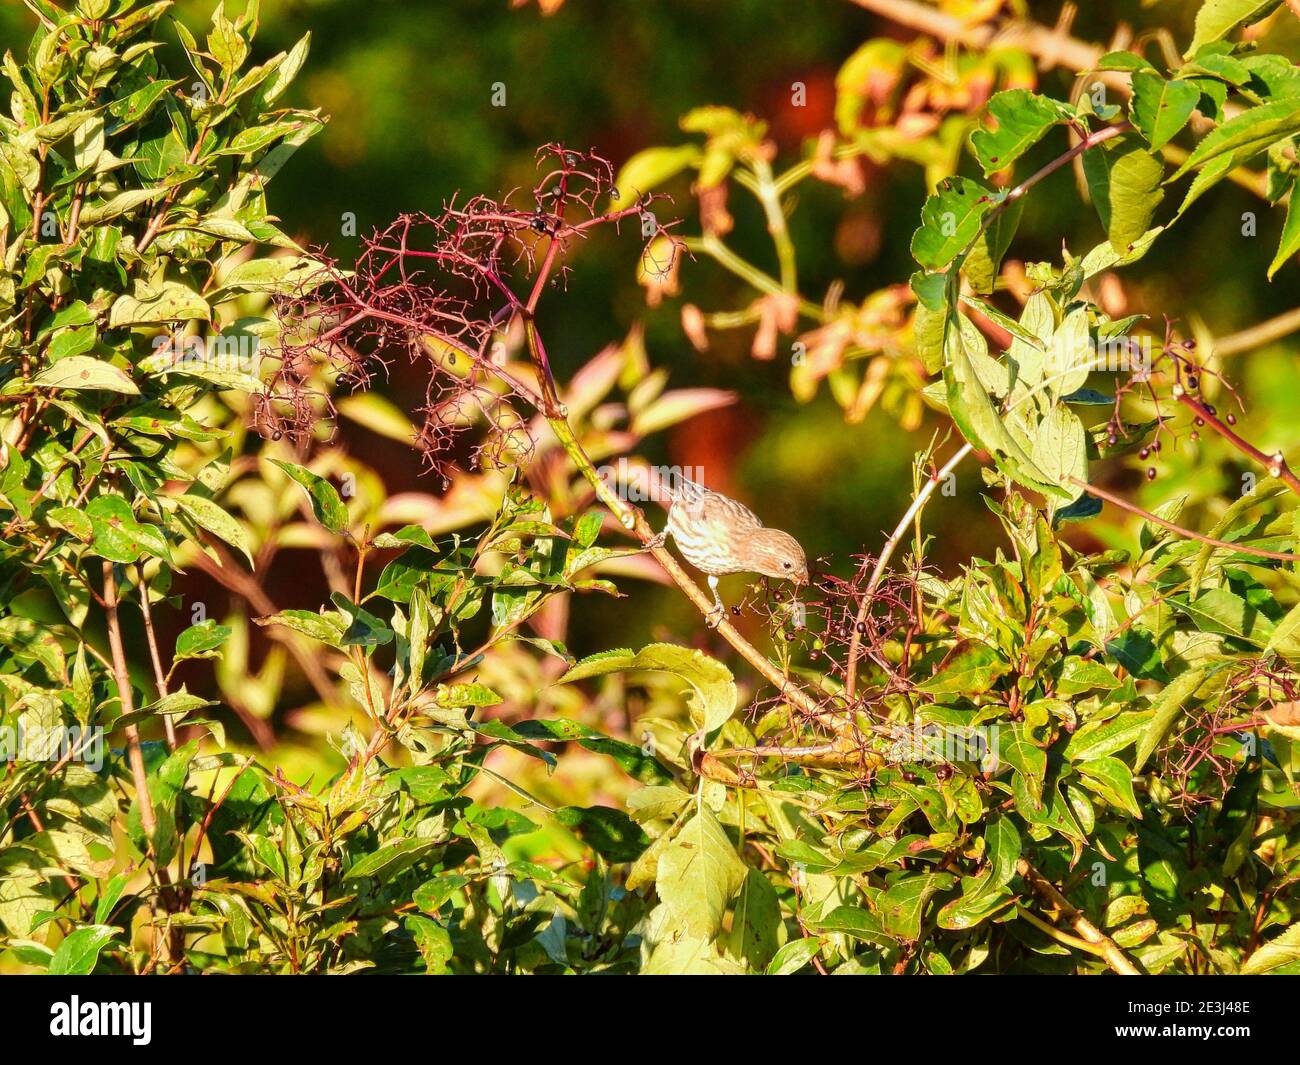 Mujer Casa Finch Bird encaramado en una rama de cepillos en El sol de la mañana se Picks en Berries junto a ella con Follaje verde y fruta en el fondo Foto de stock